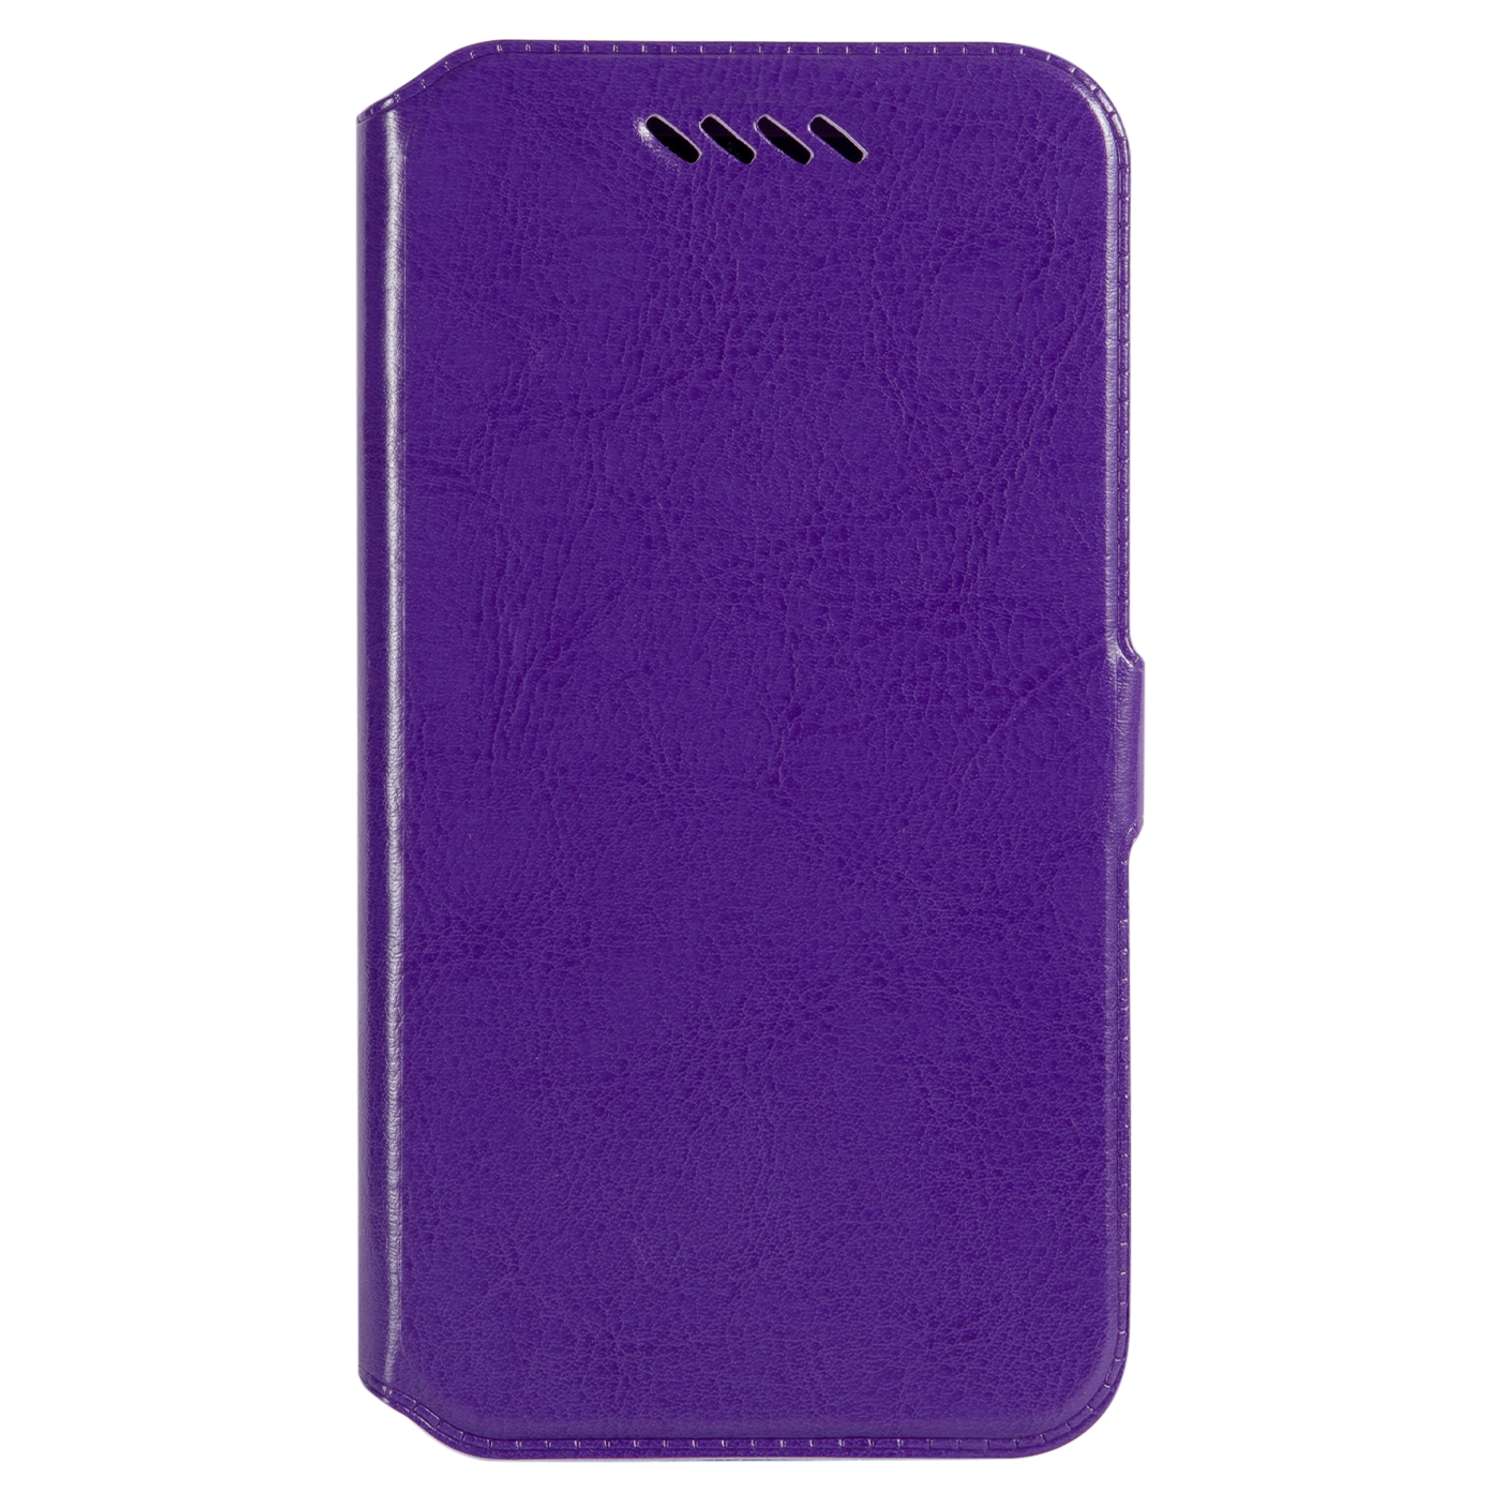 Чехол универсальный iBox Universal Slide для телефонов 4.2-5 дюймов фиолетовый - фото 3